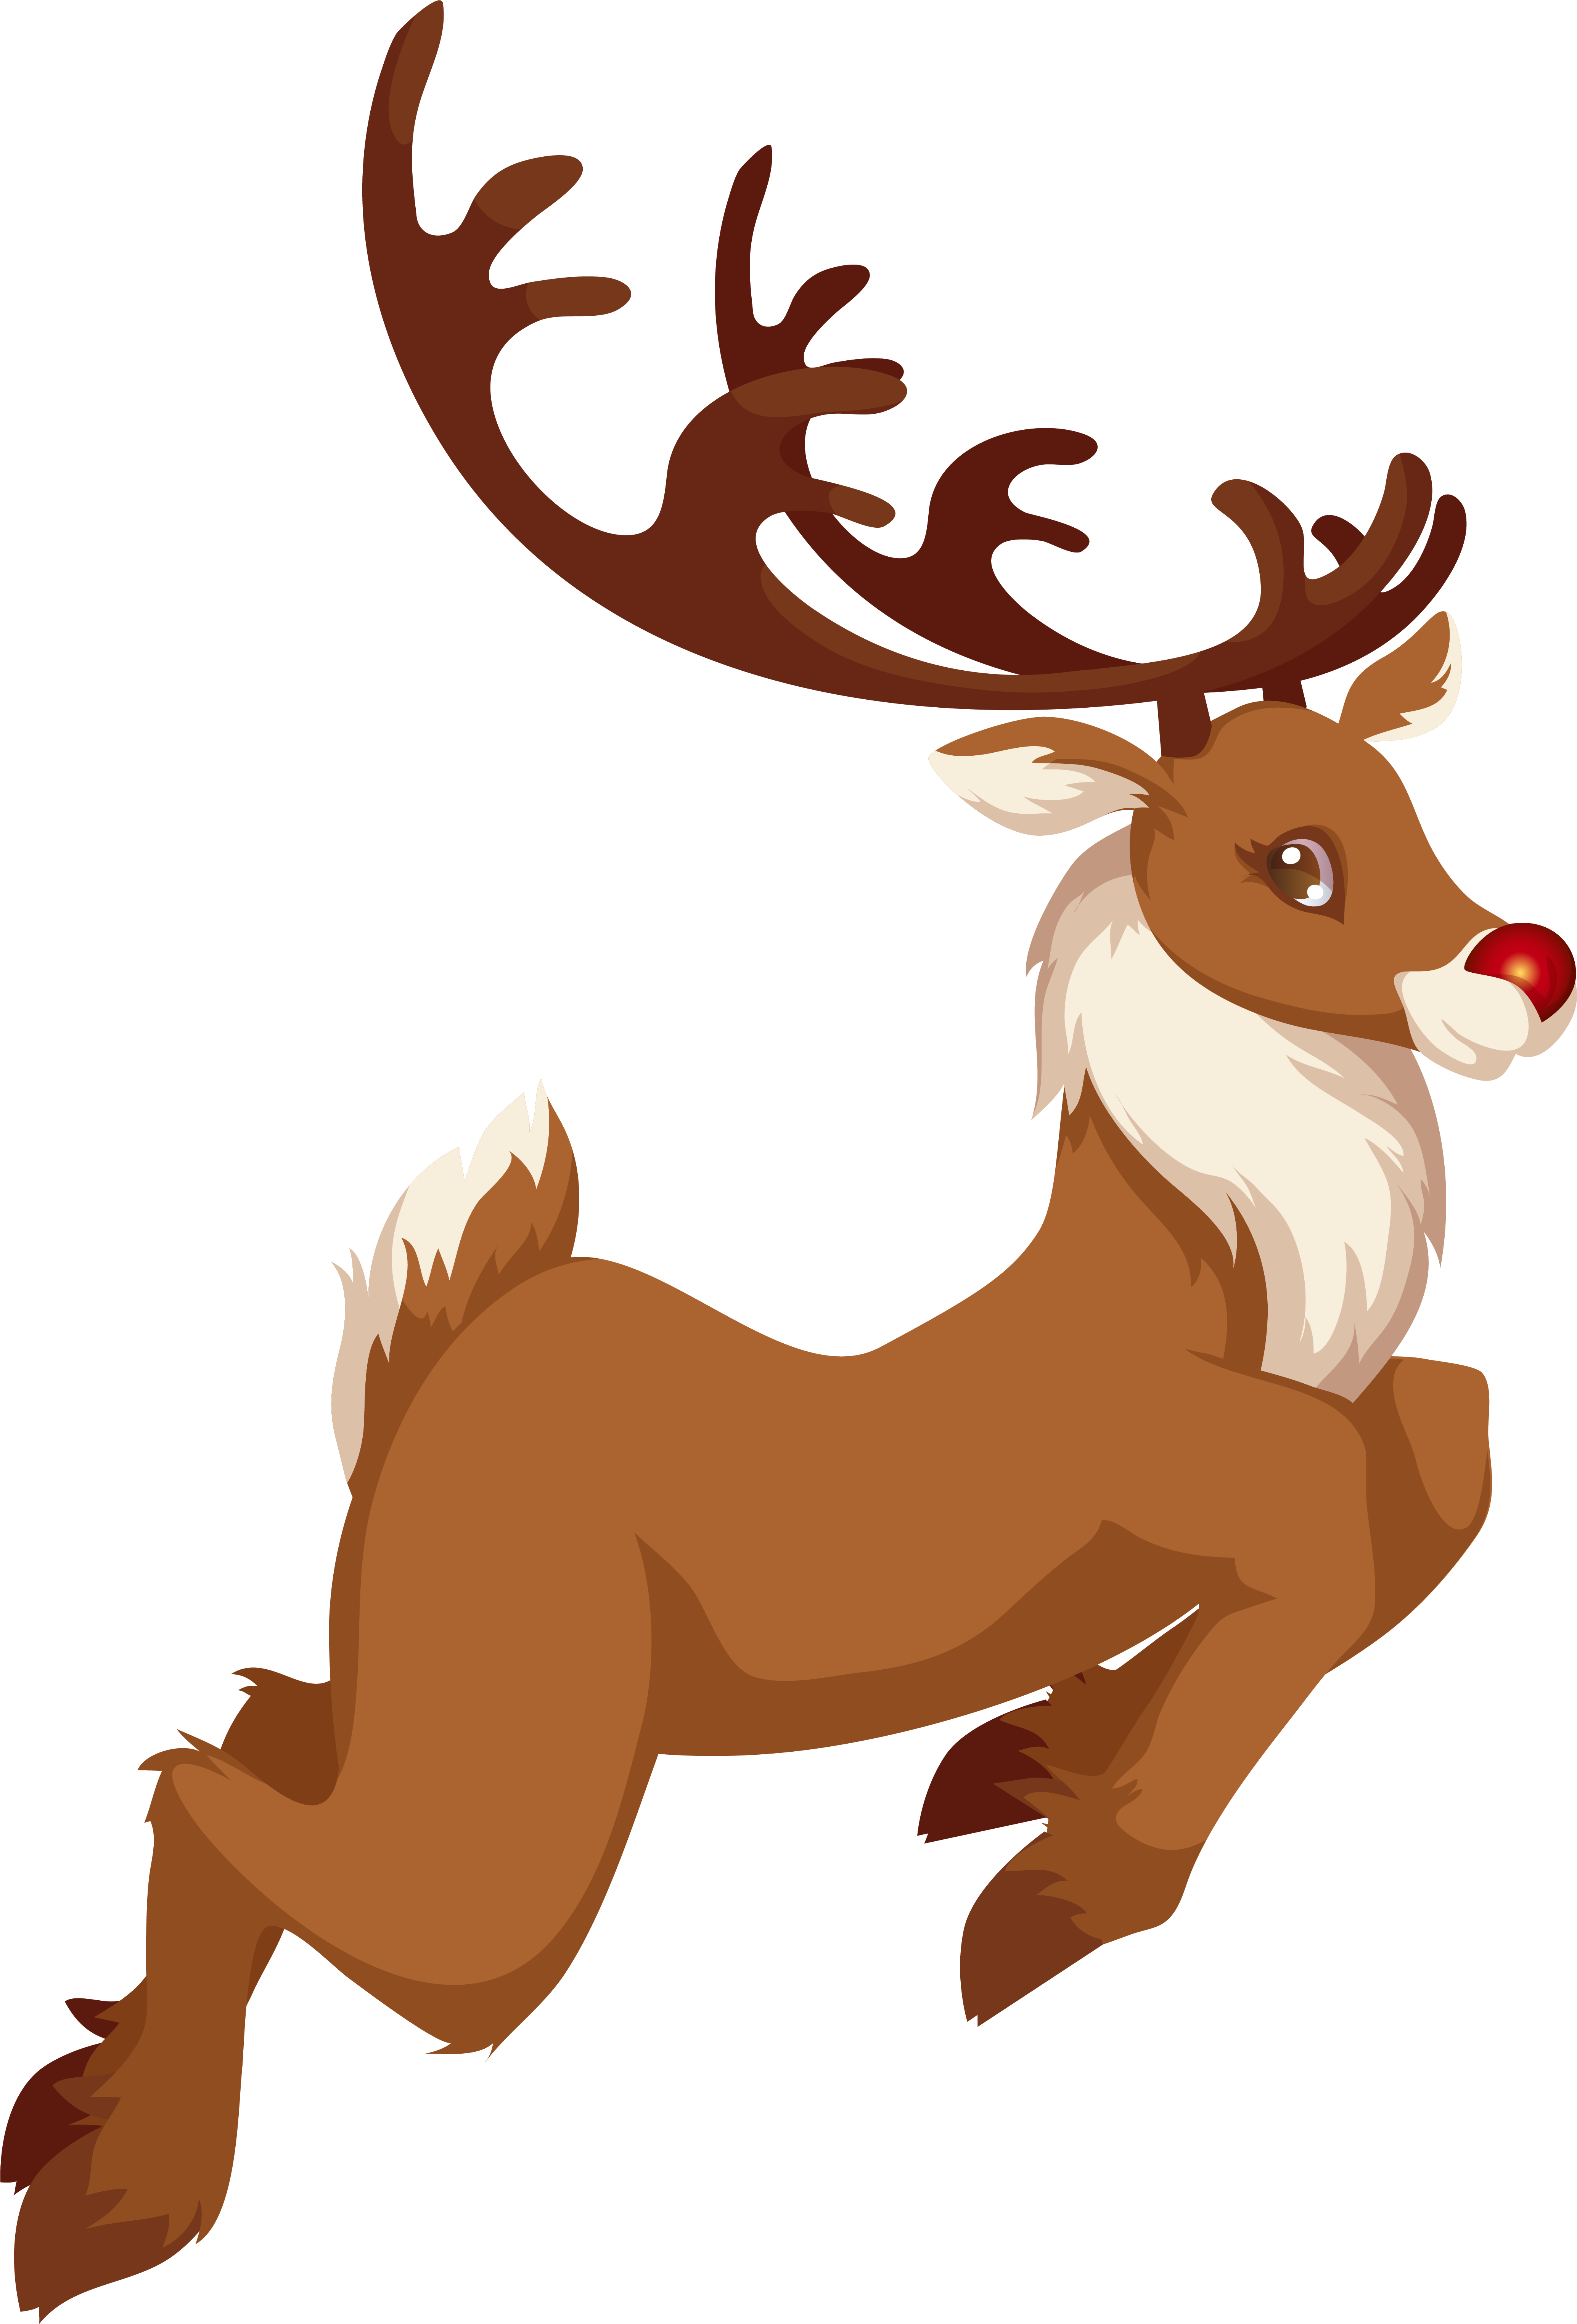 A Cartoon Of A Reindeer